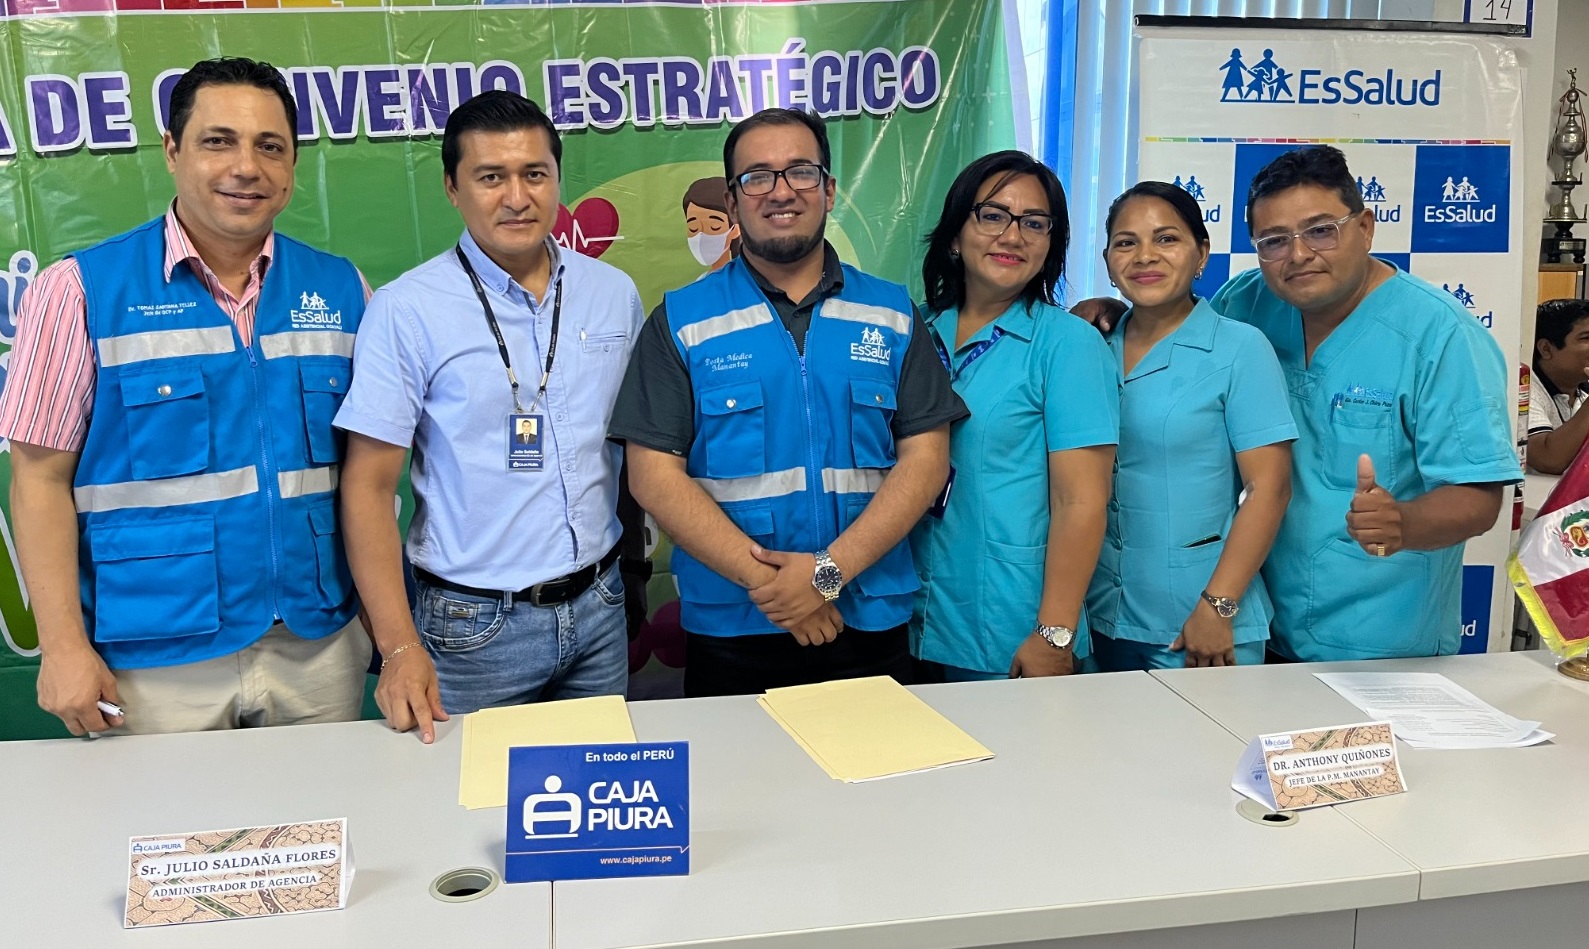 Essalud - EsSalud Ucayali firma convenio de prestaciones médicas en beneficio de trabajadores de Caja Piura